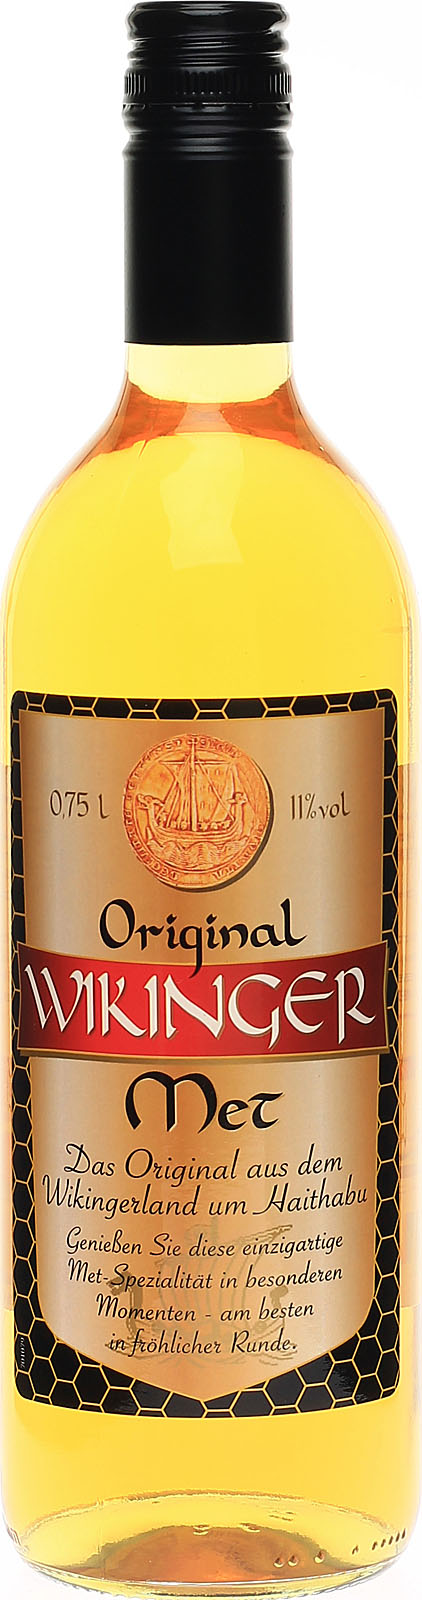 Wikinger Met Original, köstlicher überl nach Honigwein